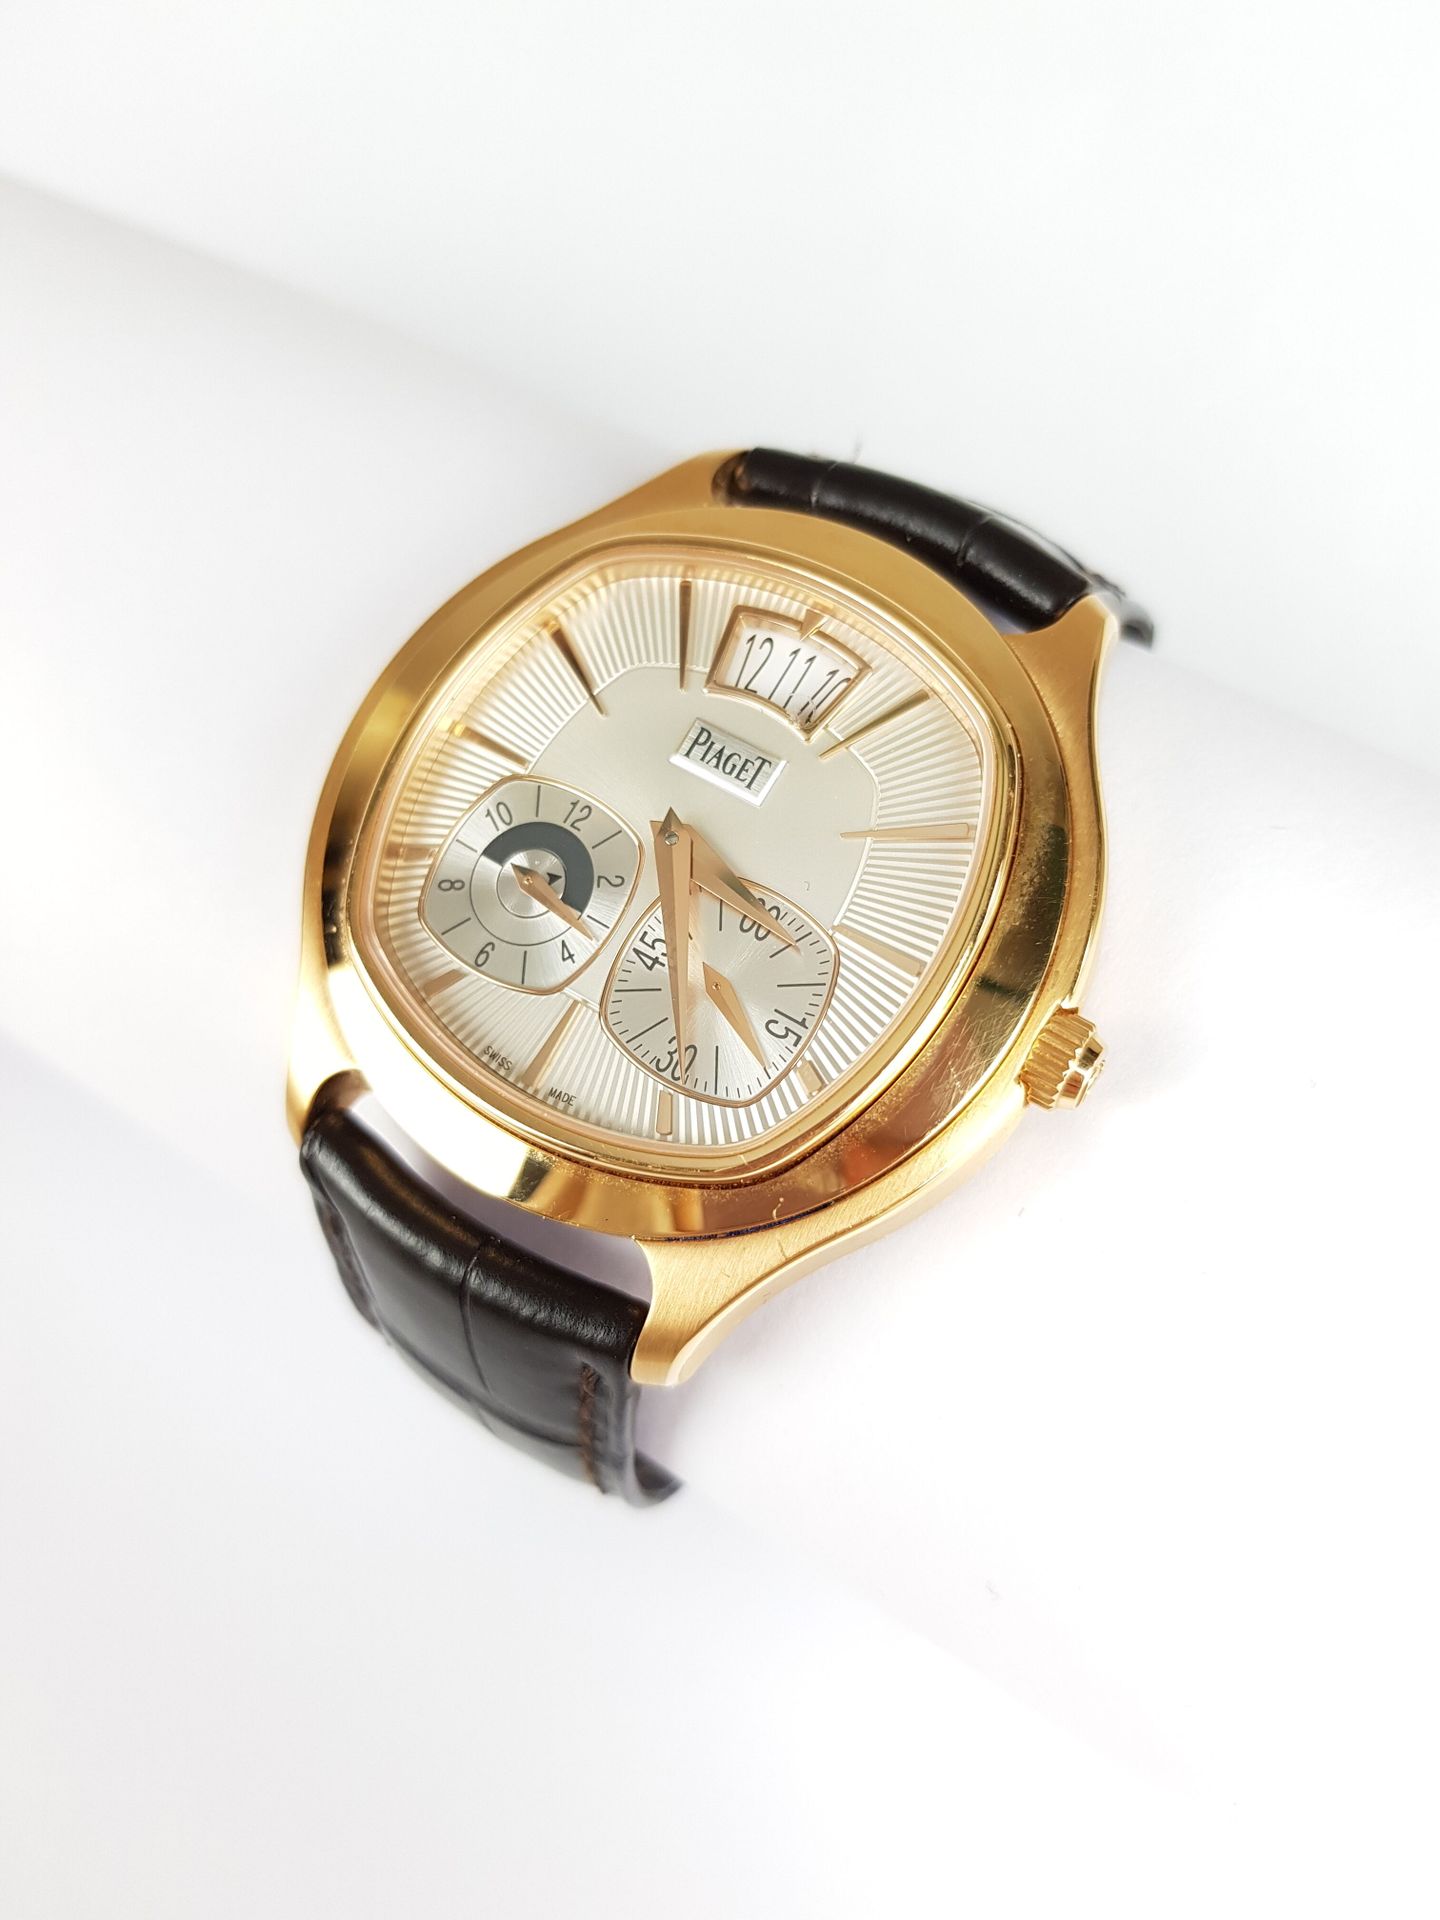 Null Precio : 3 000 euros

PIAGET

Emperador GMT

Reloj de oro rojo 750 milésima&hellip;